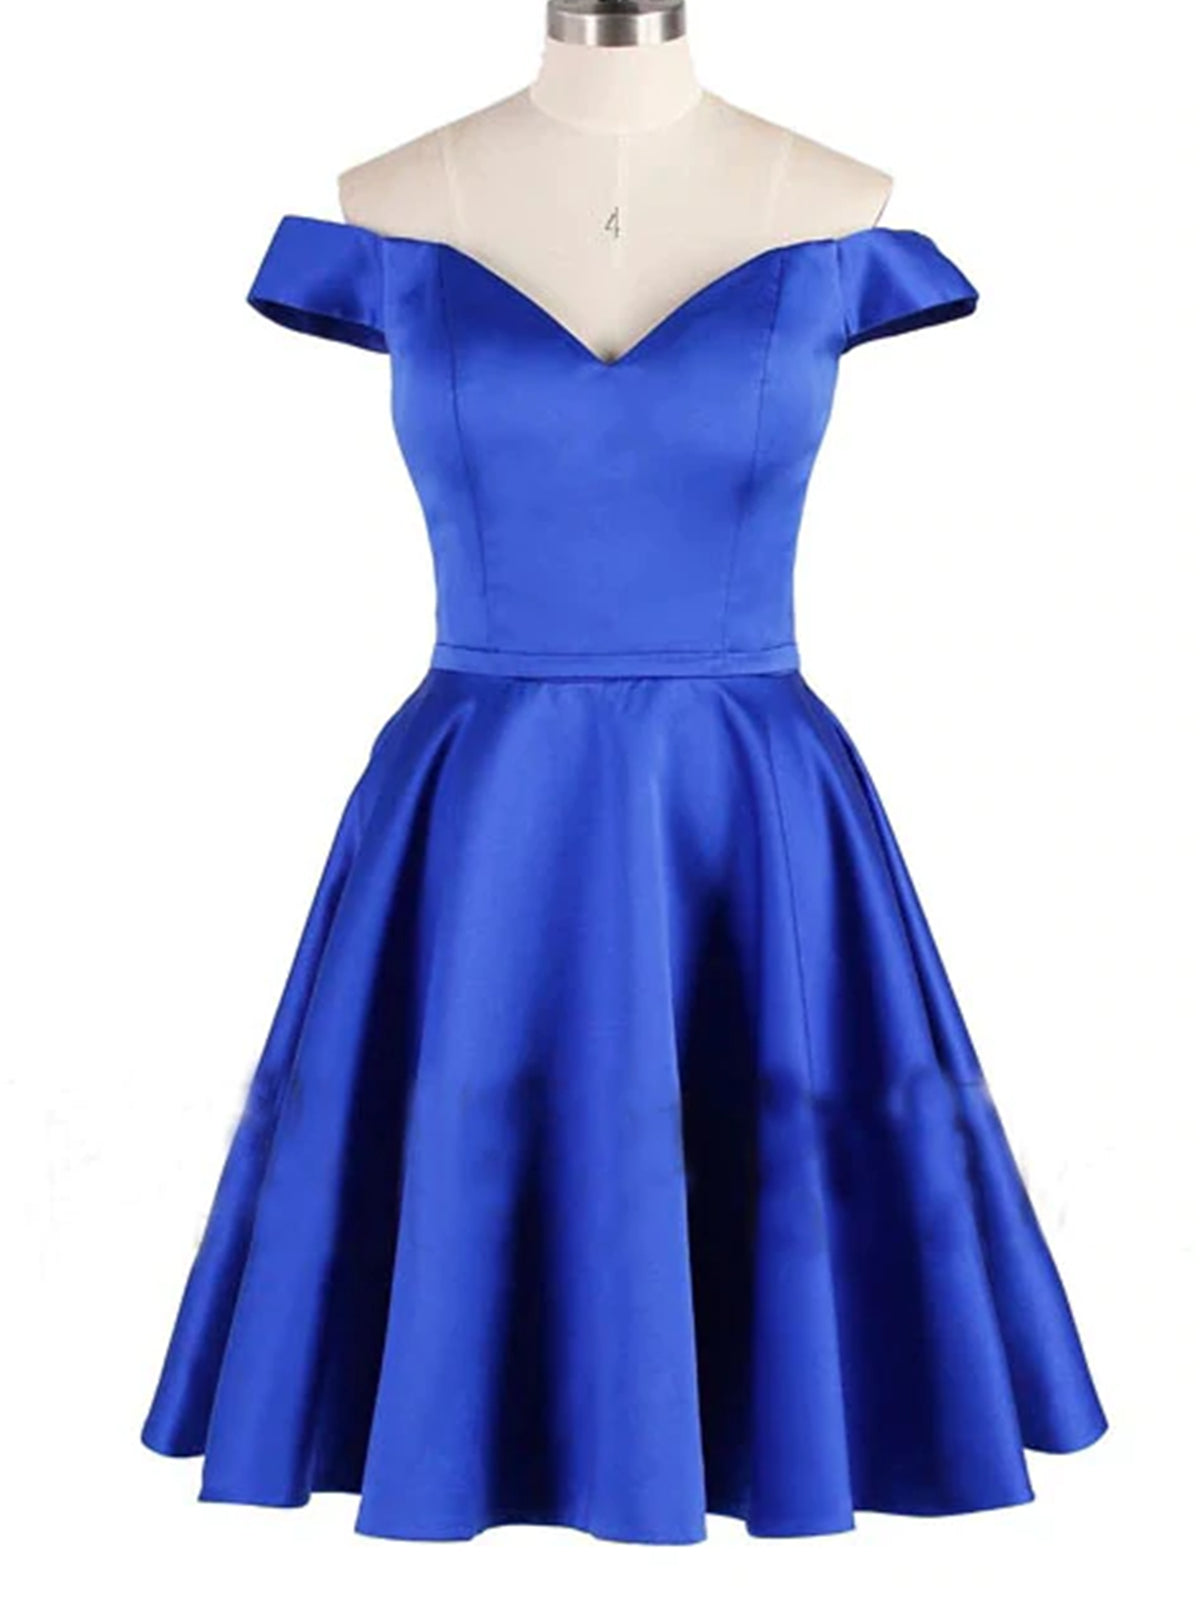 Off Shoulder Blue Satin Short Prom Dresses, Short Blue Homecoming Dresses, Blue Formal Evening Dresses 